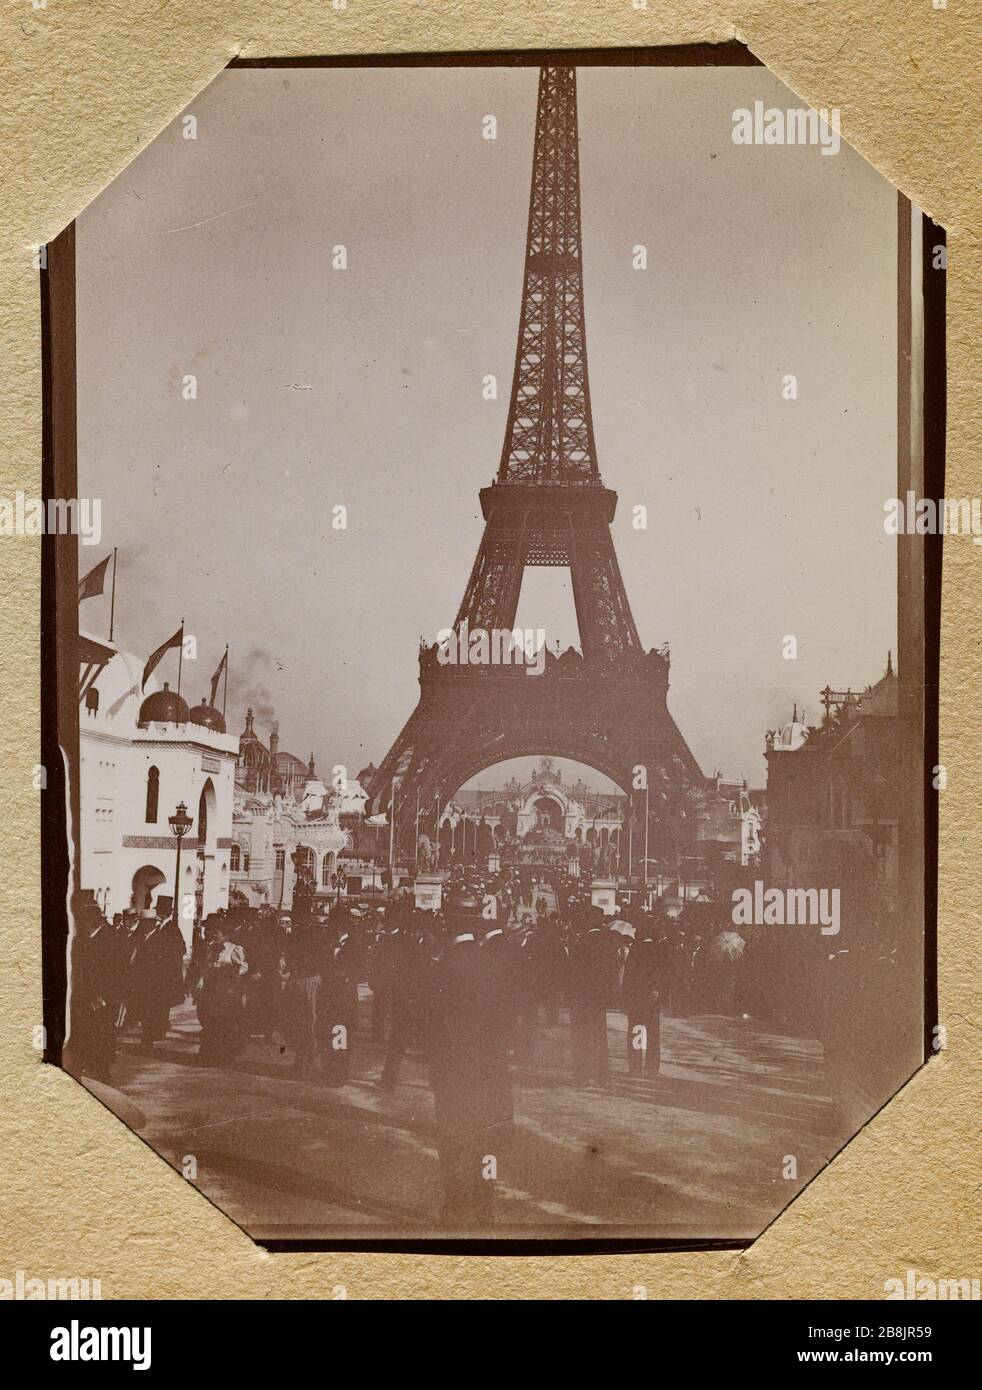 Album del World Expo 1900 [Torre Eiffel] Anonyme. Album de l'exposition universelle de 1900. Tour Eiffel. 1900. Musée des Beaux-Arts de la Ville de Paris, Petit Palais. Foto Stock